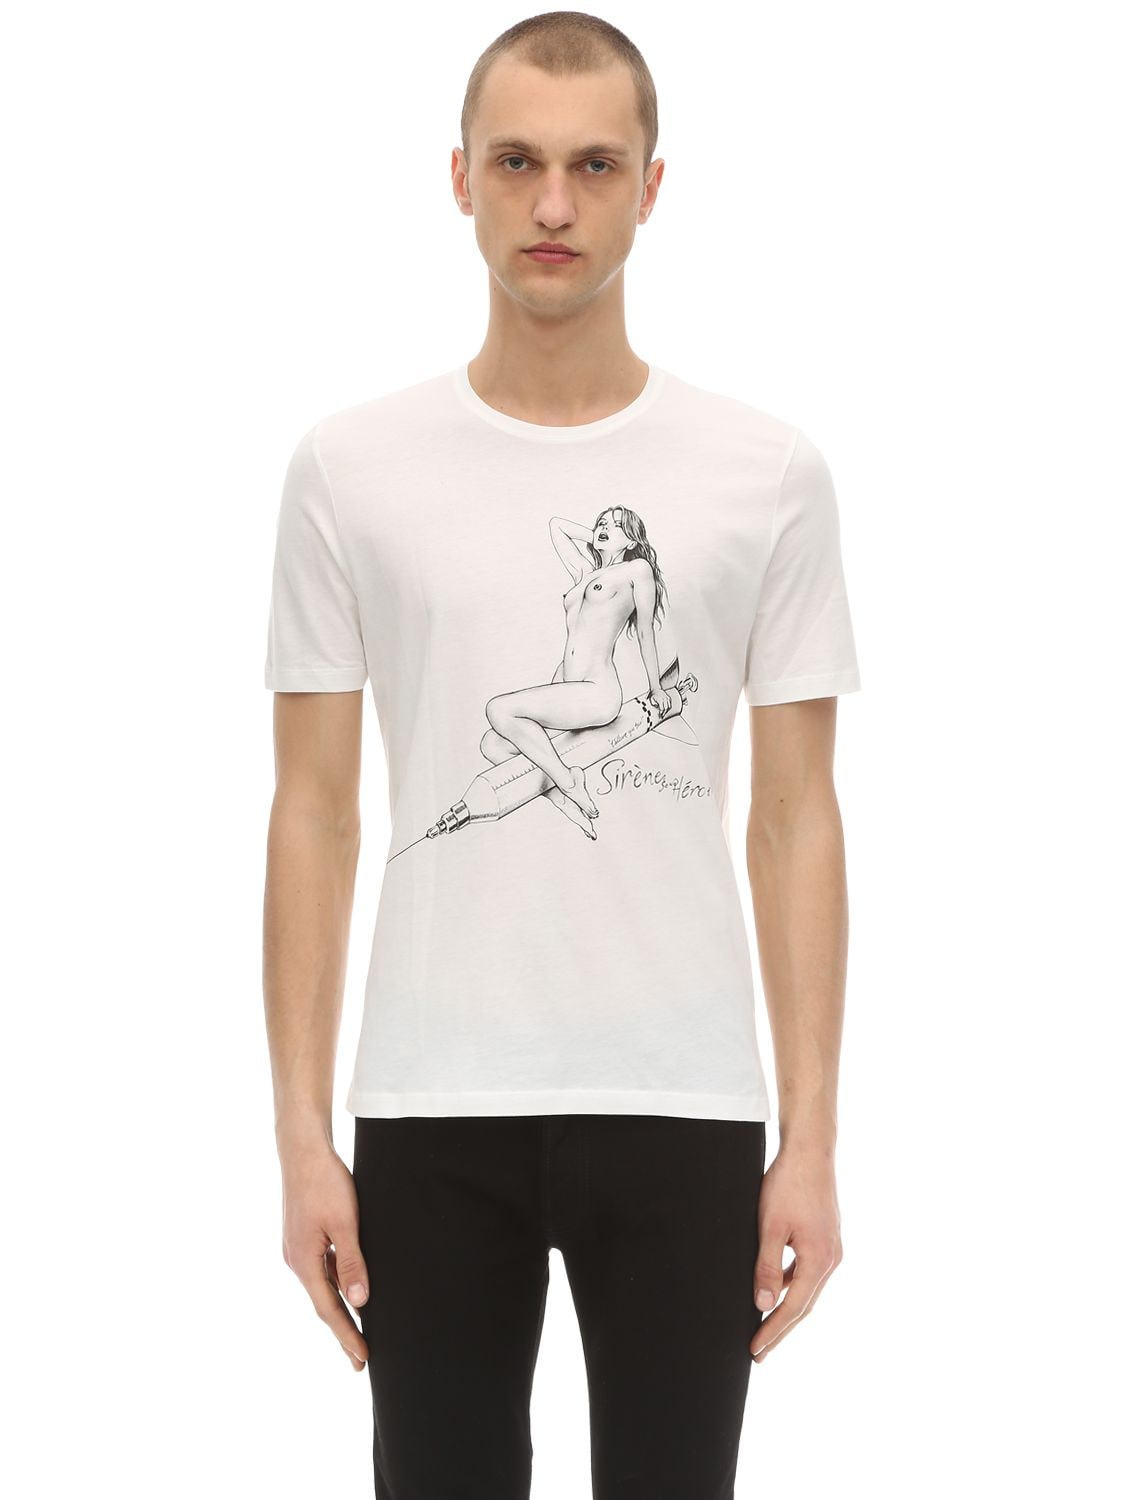 Passarella Death Squad - T-shirt aus baumwolle mit druck - Weiß ...